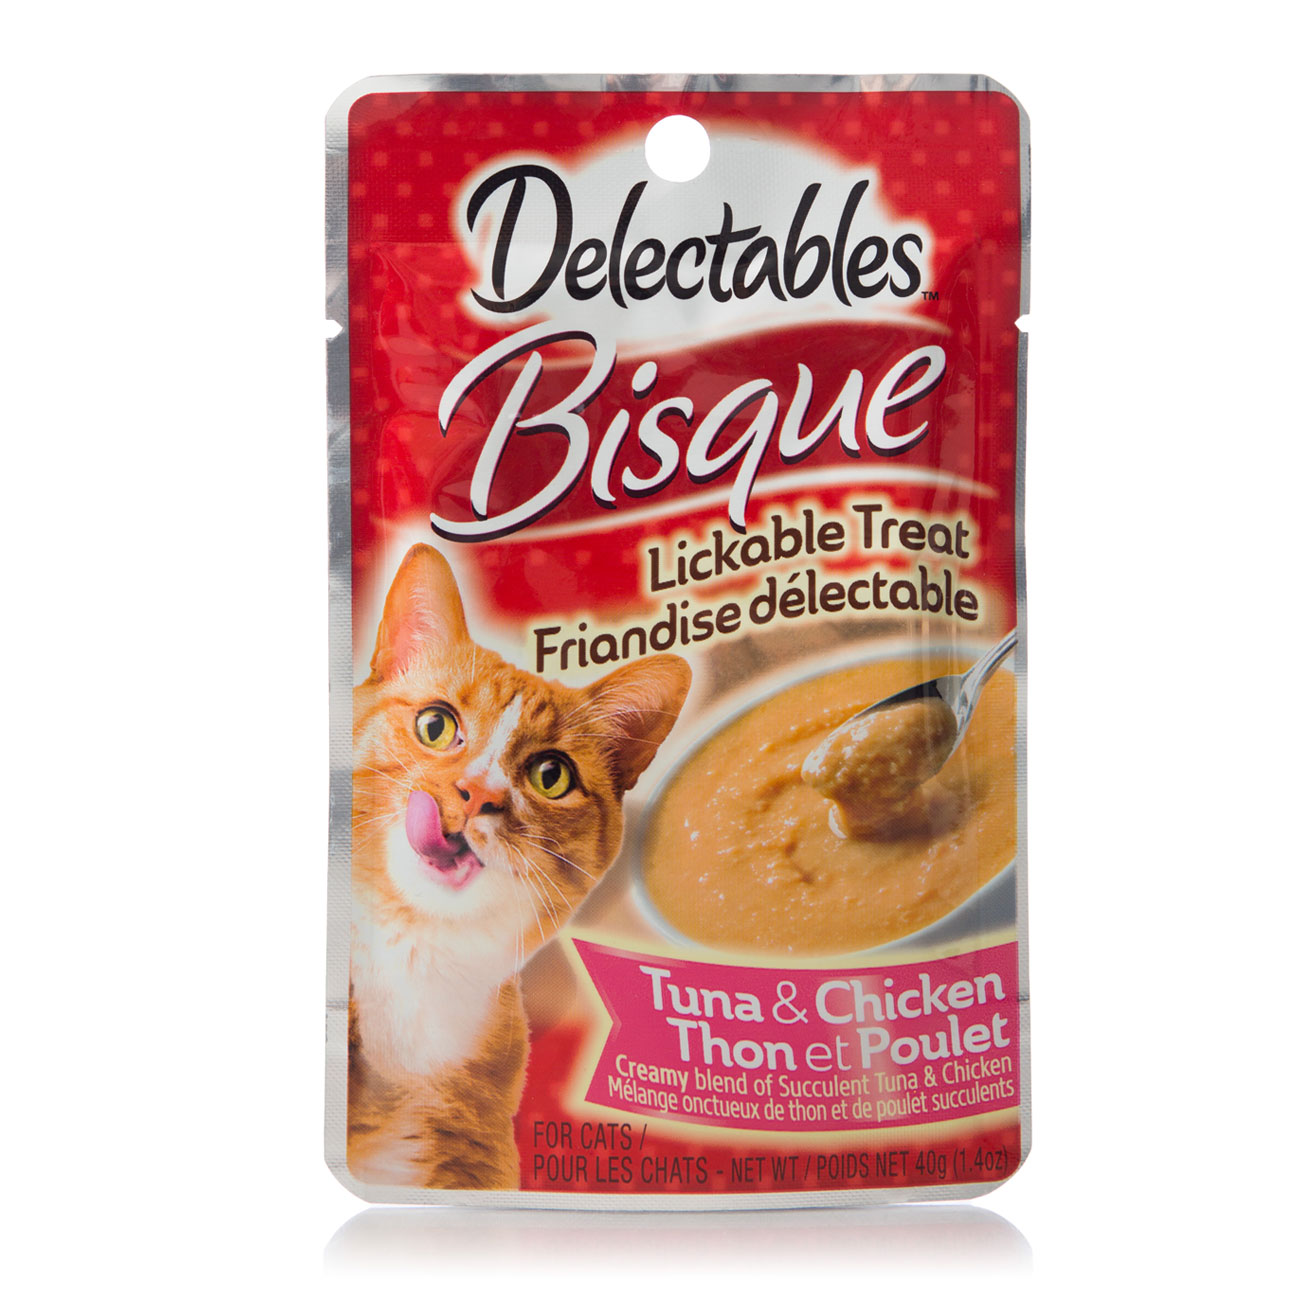 Delectables™ Lickable Treat Bisque Tuna & Chicken Hartz